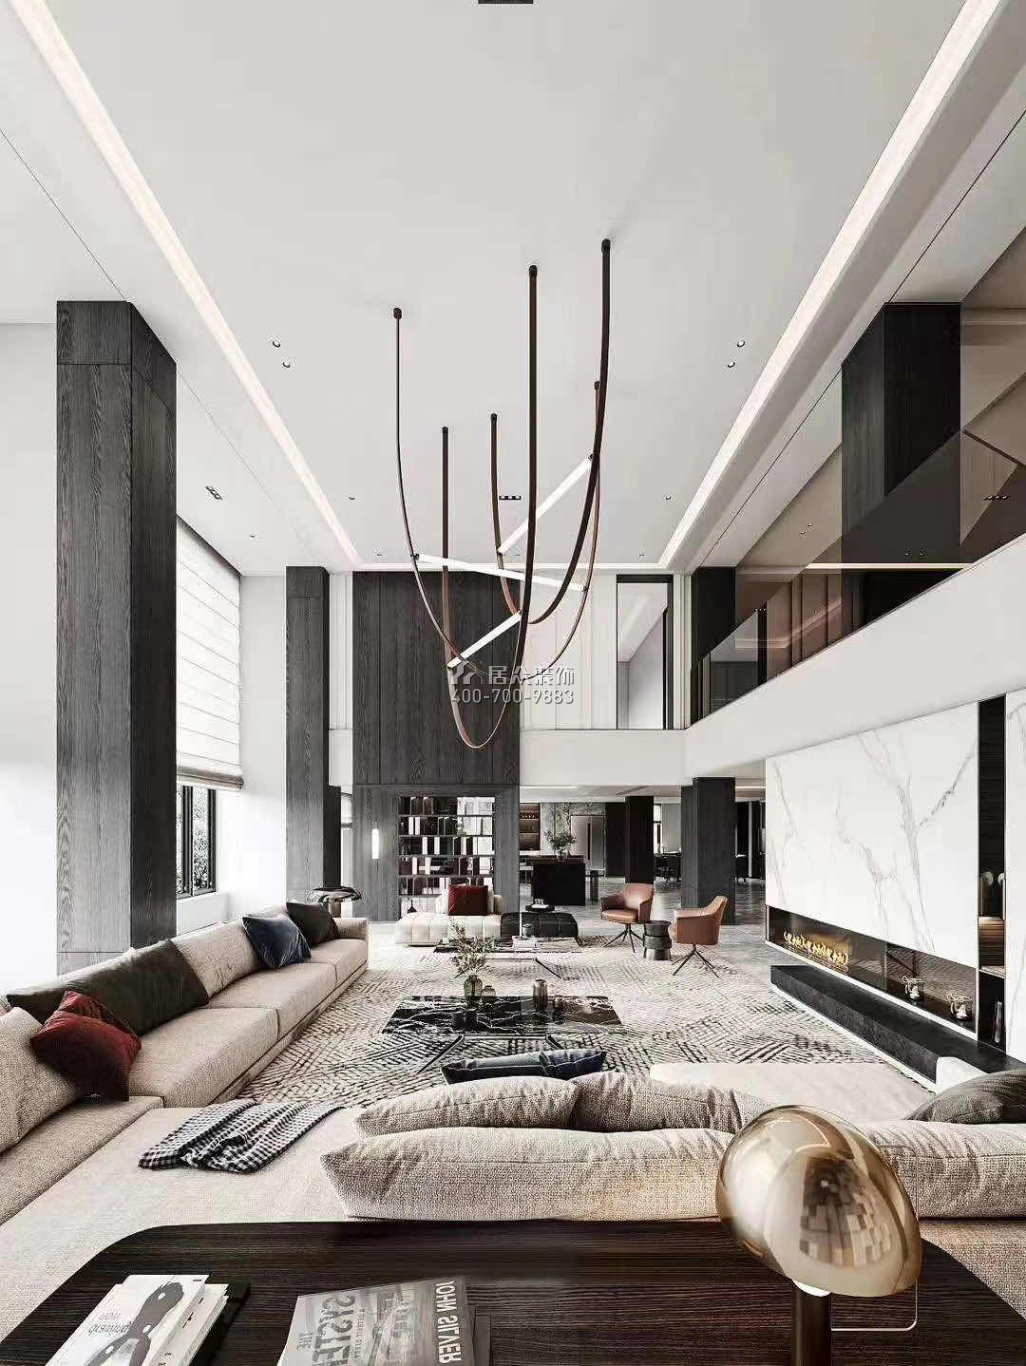 新天鵝堡560平方米現代簡約風格別墅戶型客廳裝修效果圖